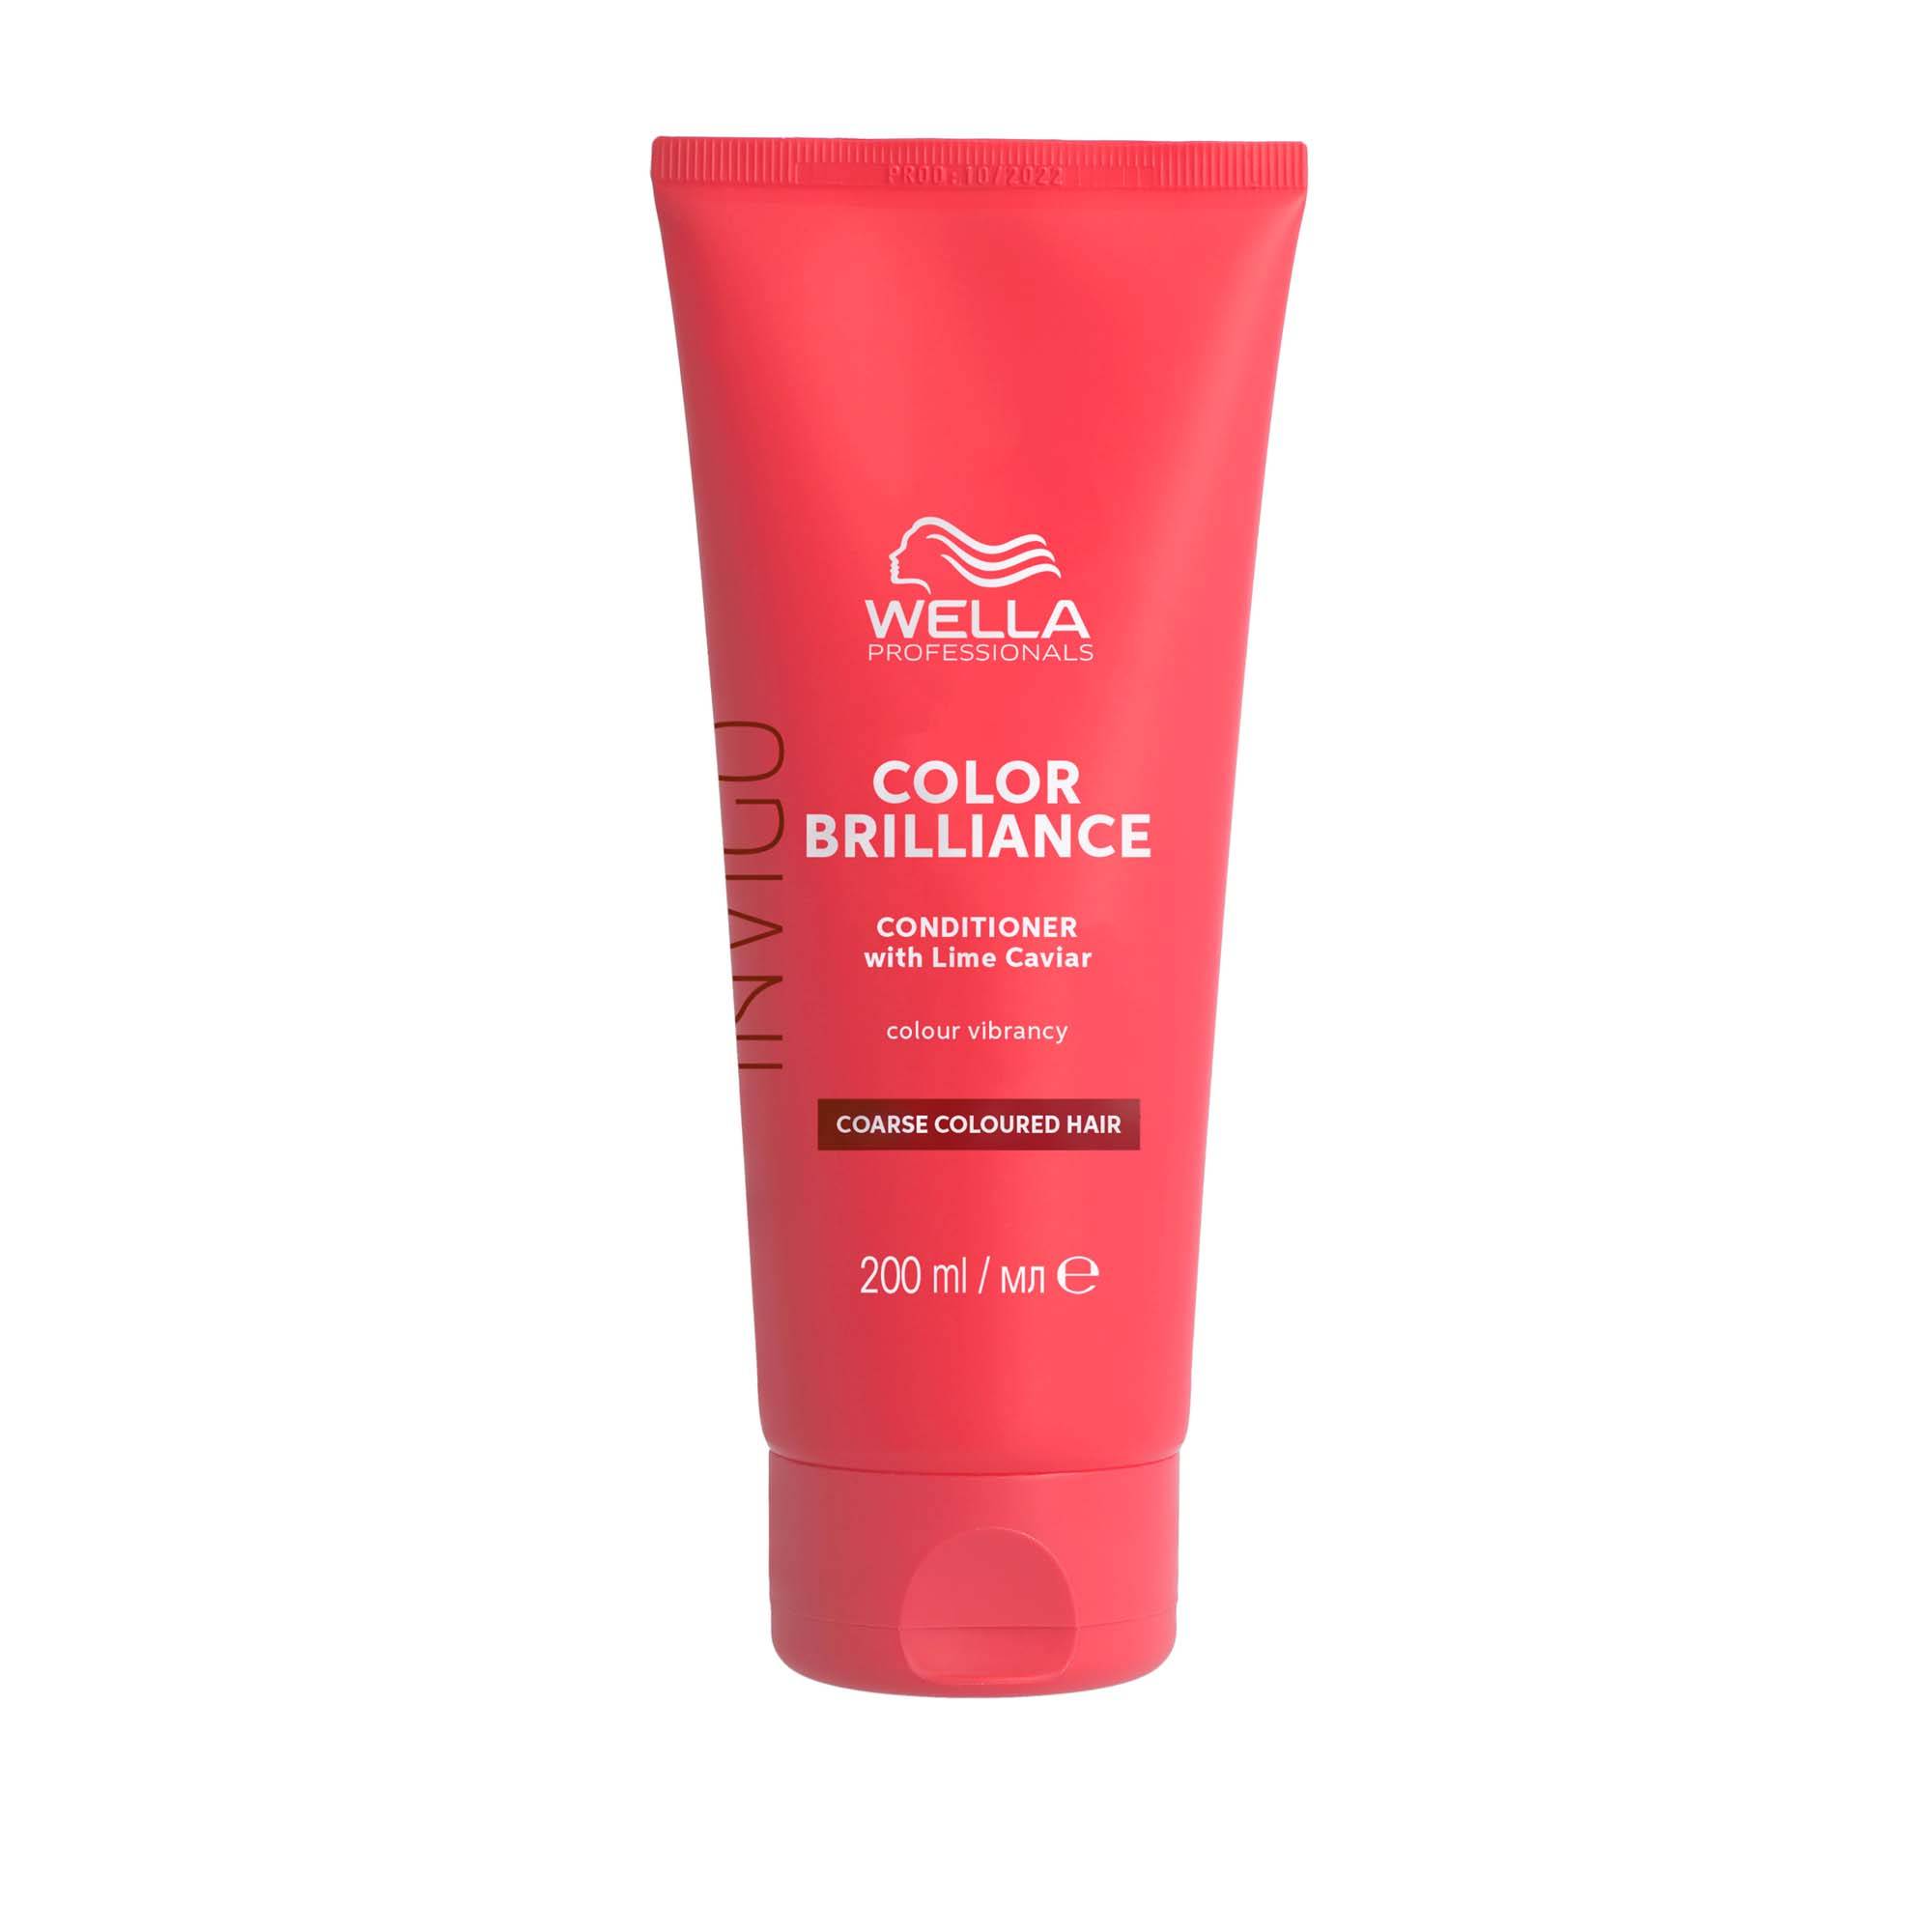 Après-shampoing protection couleur cheveux épais Color Brilliance de la marque Wella Professionals Contenance 200ml - 1